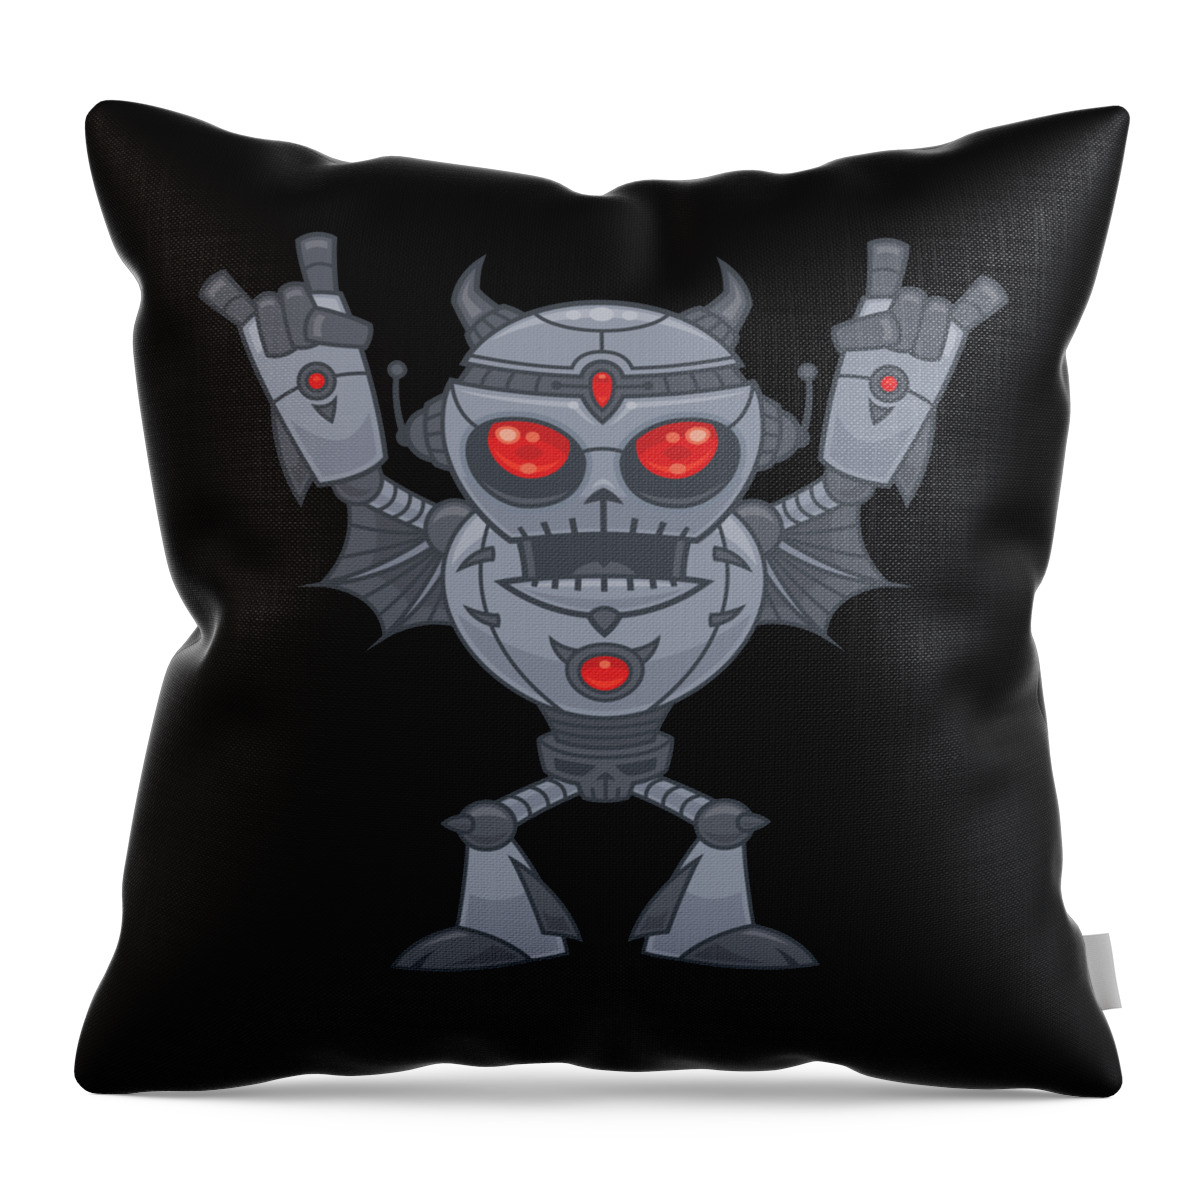 Robot Throw Pillow featuring the digital art Metalhead - Heavy Metal Robot Devil by John Schwegel